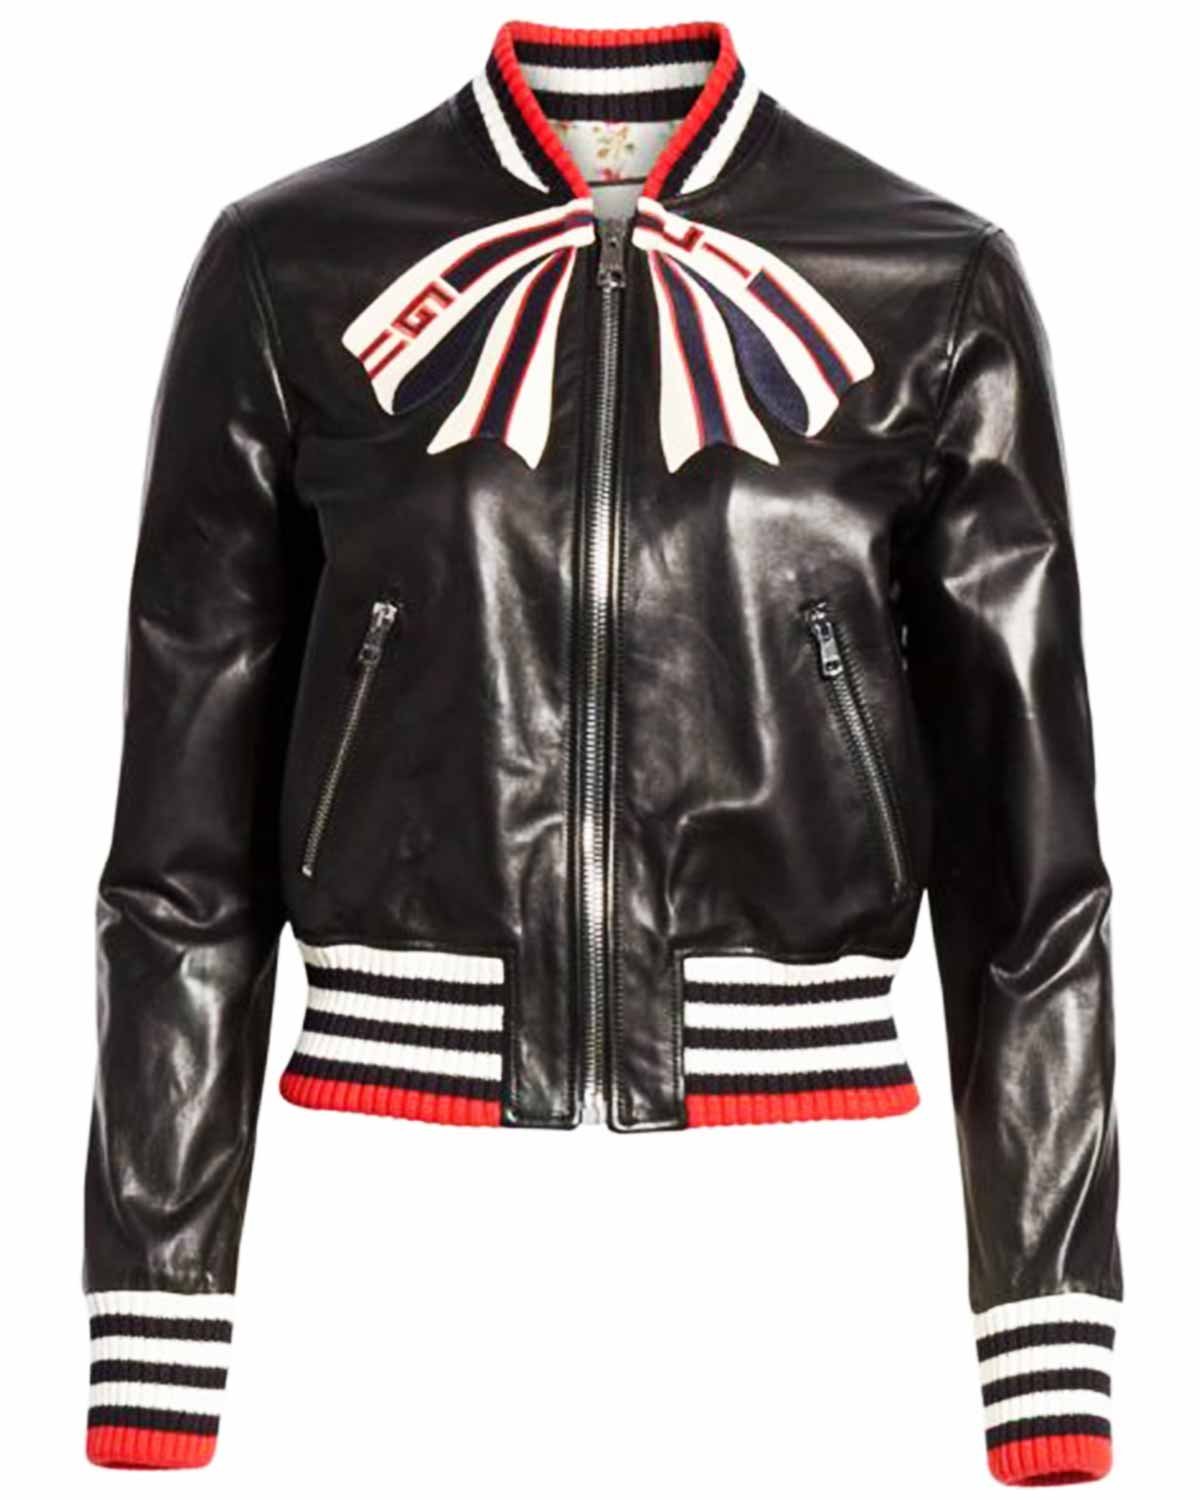 Elite Dorinda Medley Black Leather Jacket